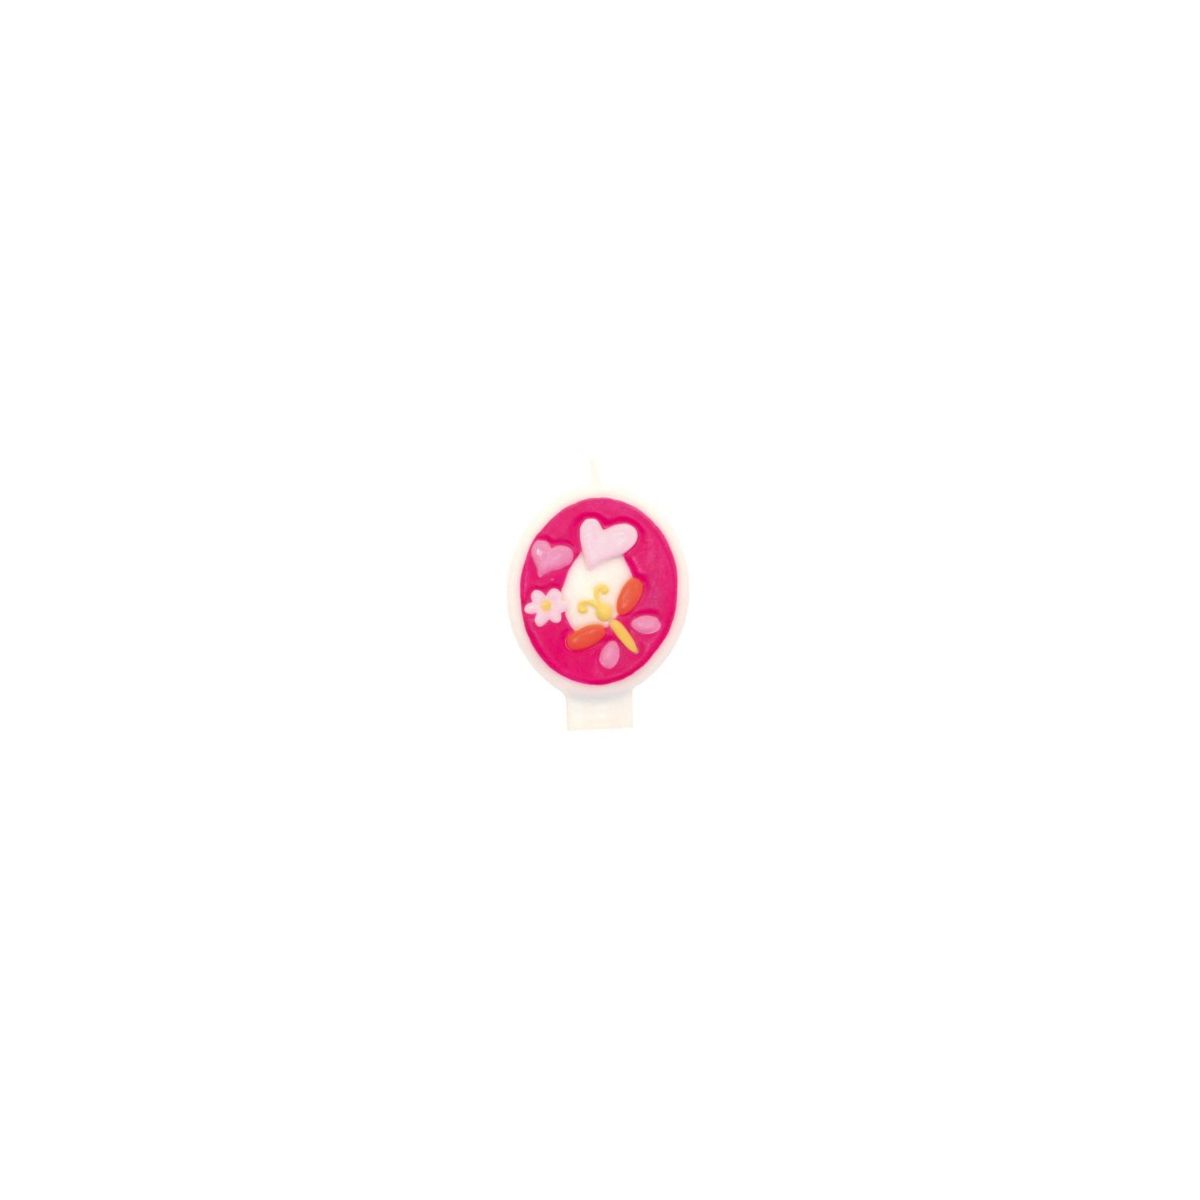 Świeczka urodzinowa cyferka kwiatki - zero 0 Riethmuller (551740)